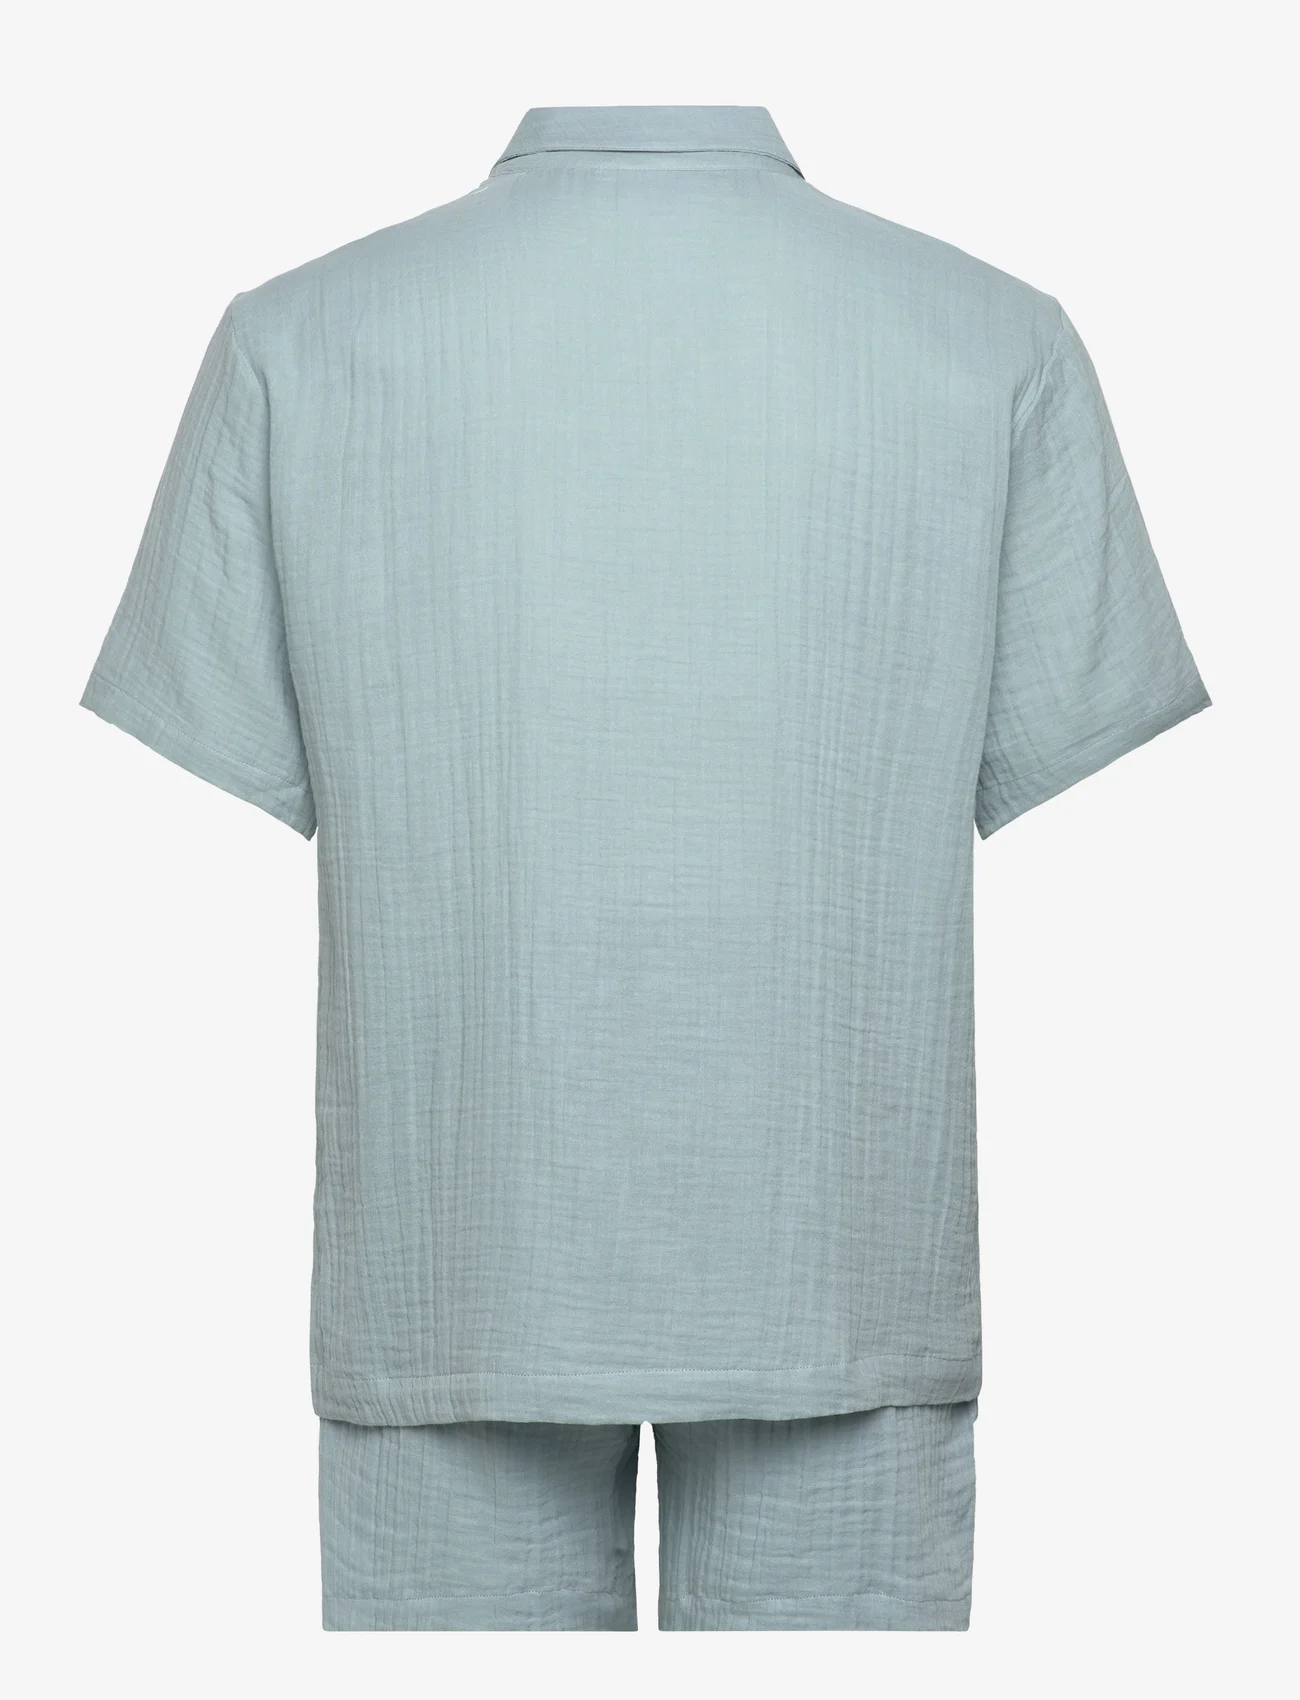 Calvin Klein - S/S SHORT SET - pidžaamakomplekt - arona - 1